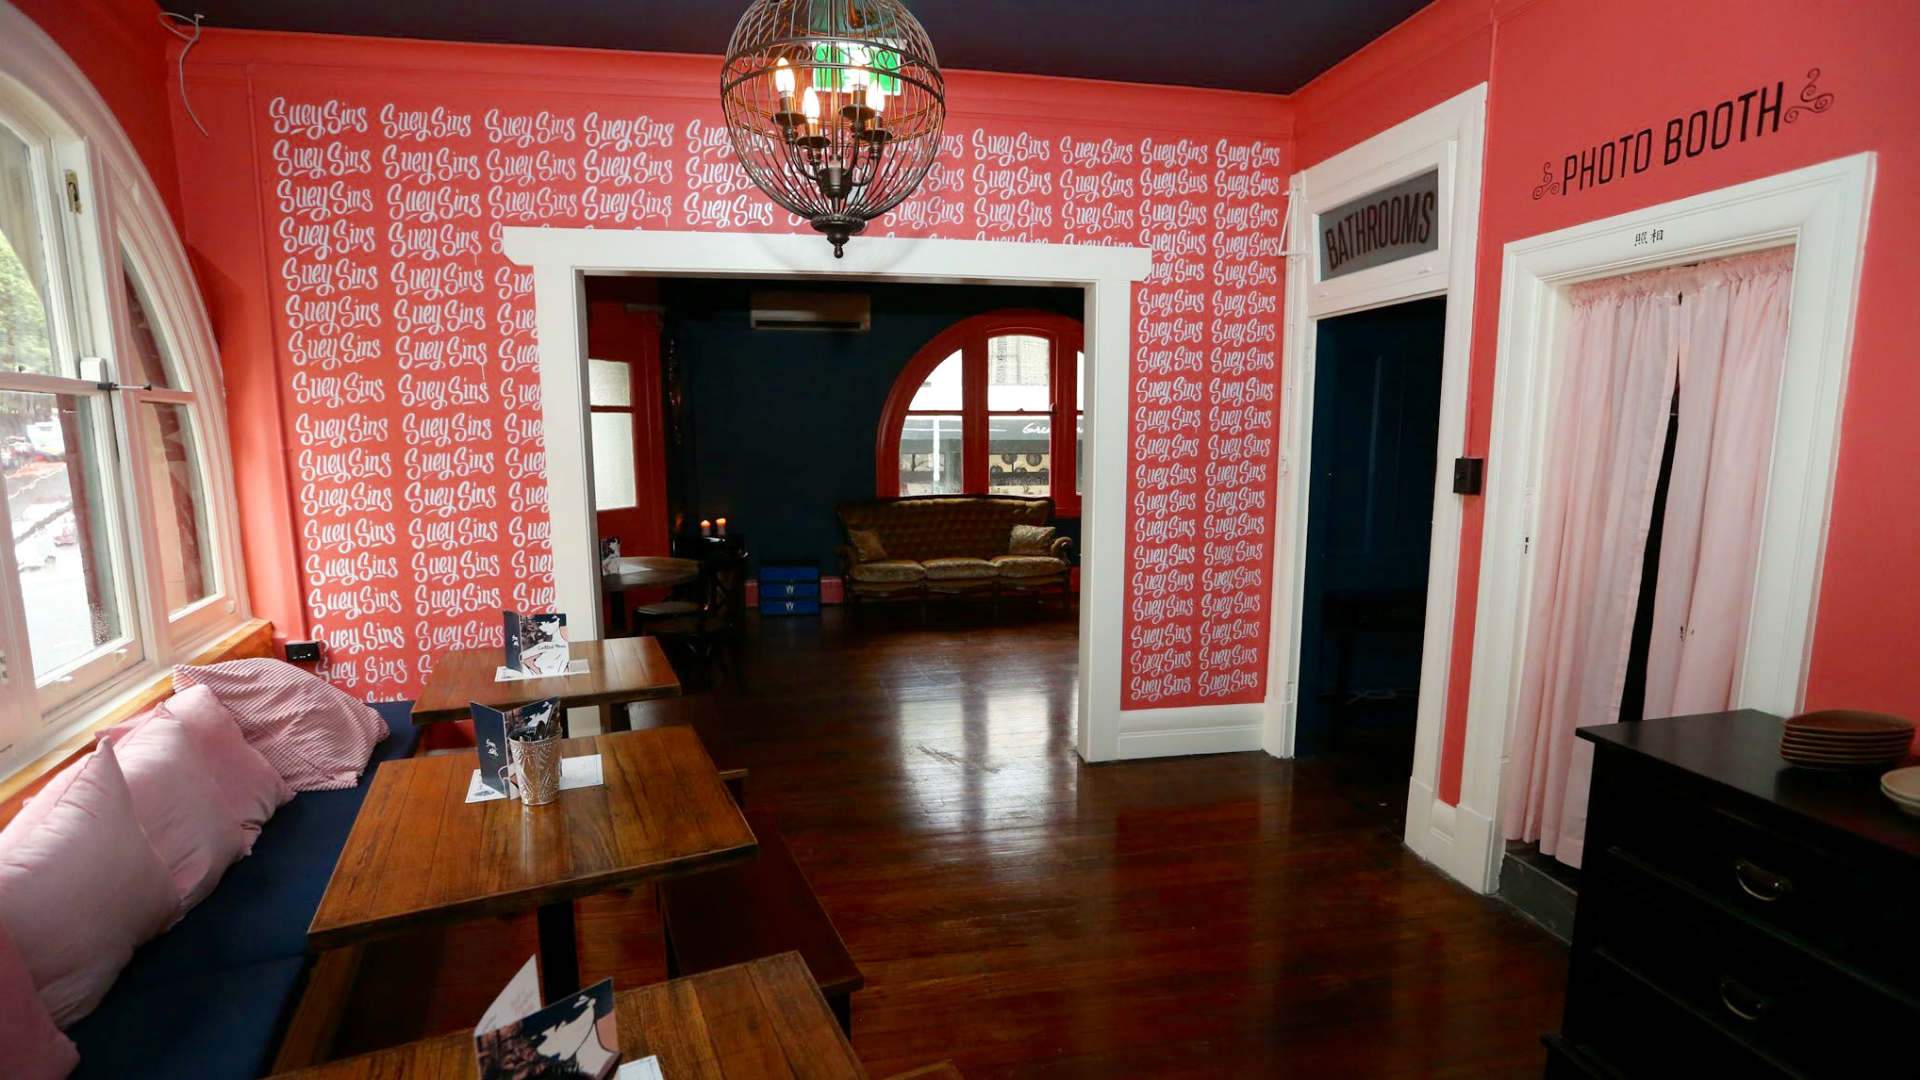 Sydney's "Sexy Pre-War Shanghai" Bar Suey Sins Publicly Slammed for Cultural Appropriation